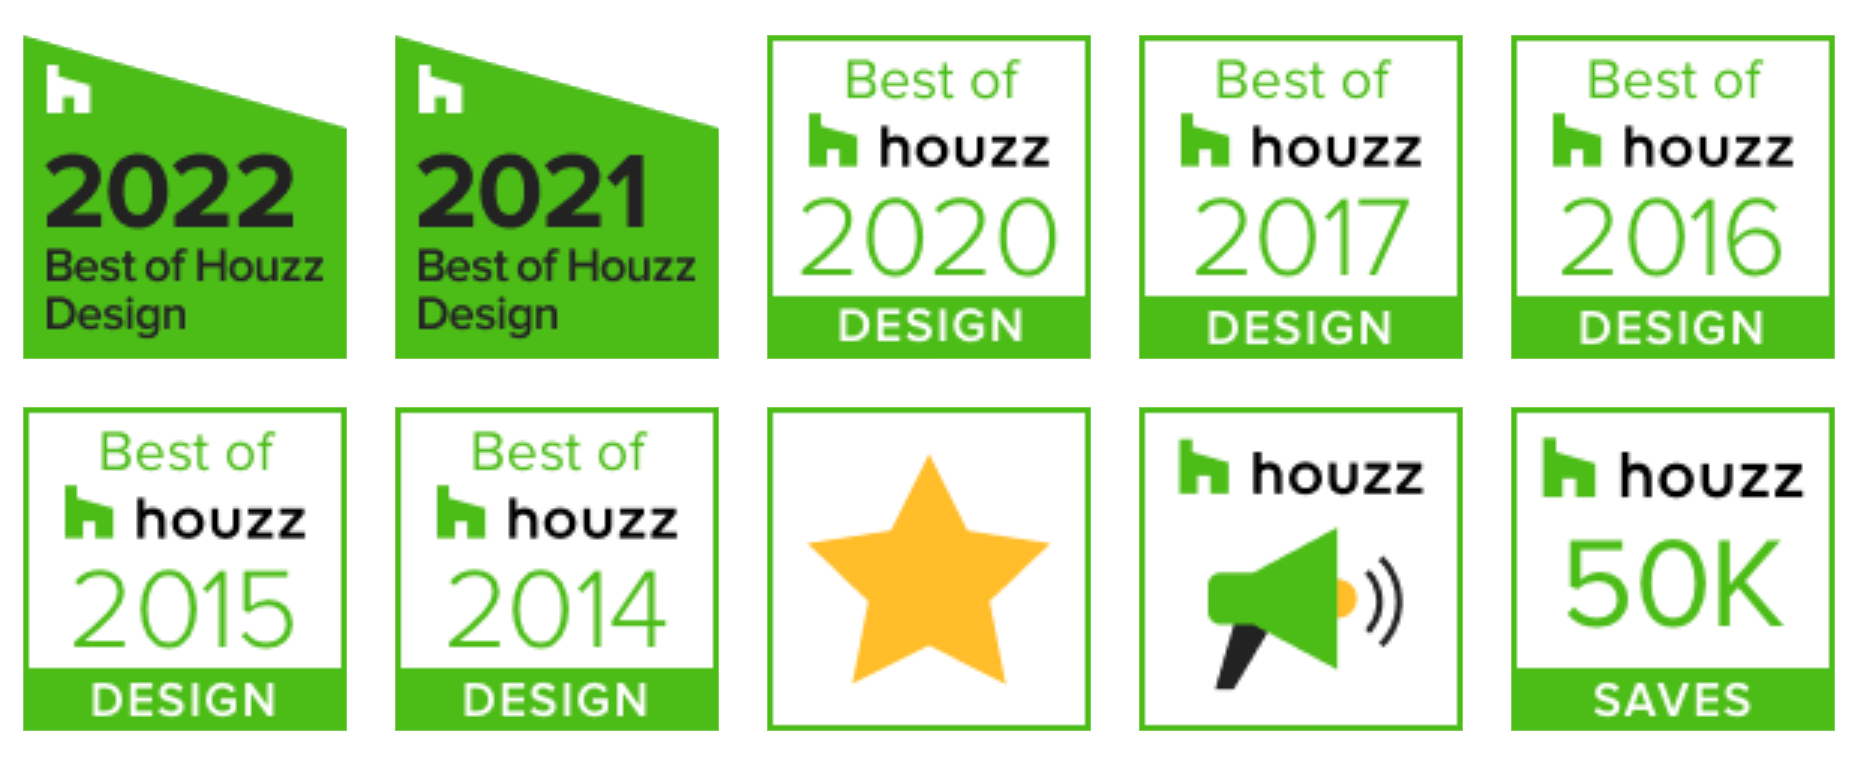 houzz-badges